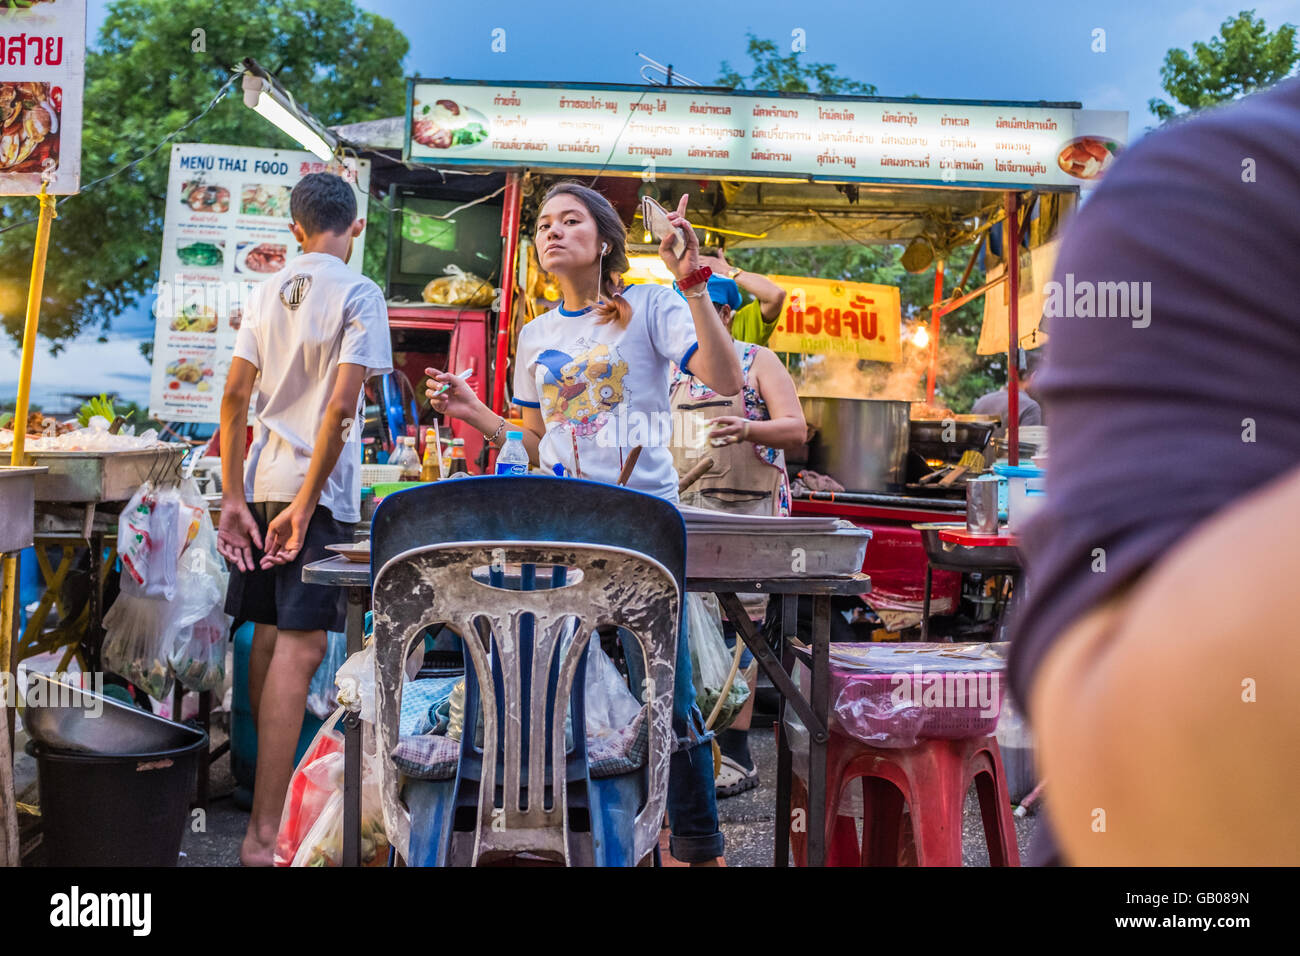 Serveuse travaillant dans l'état occupé Thai street food, Chiang Mai Thaïlande Banque D'Images